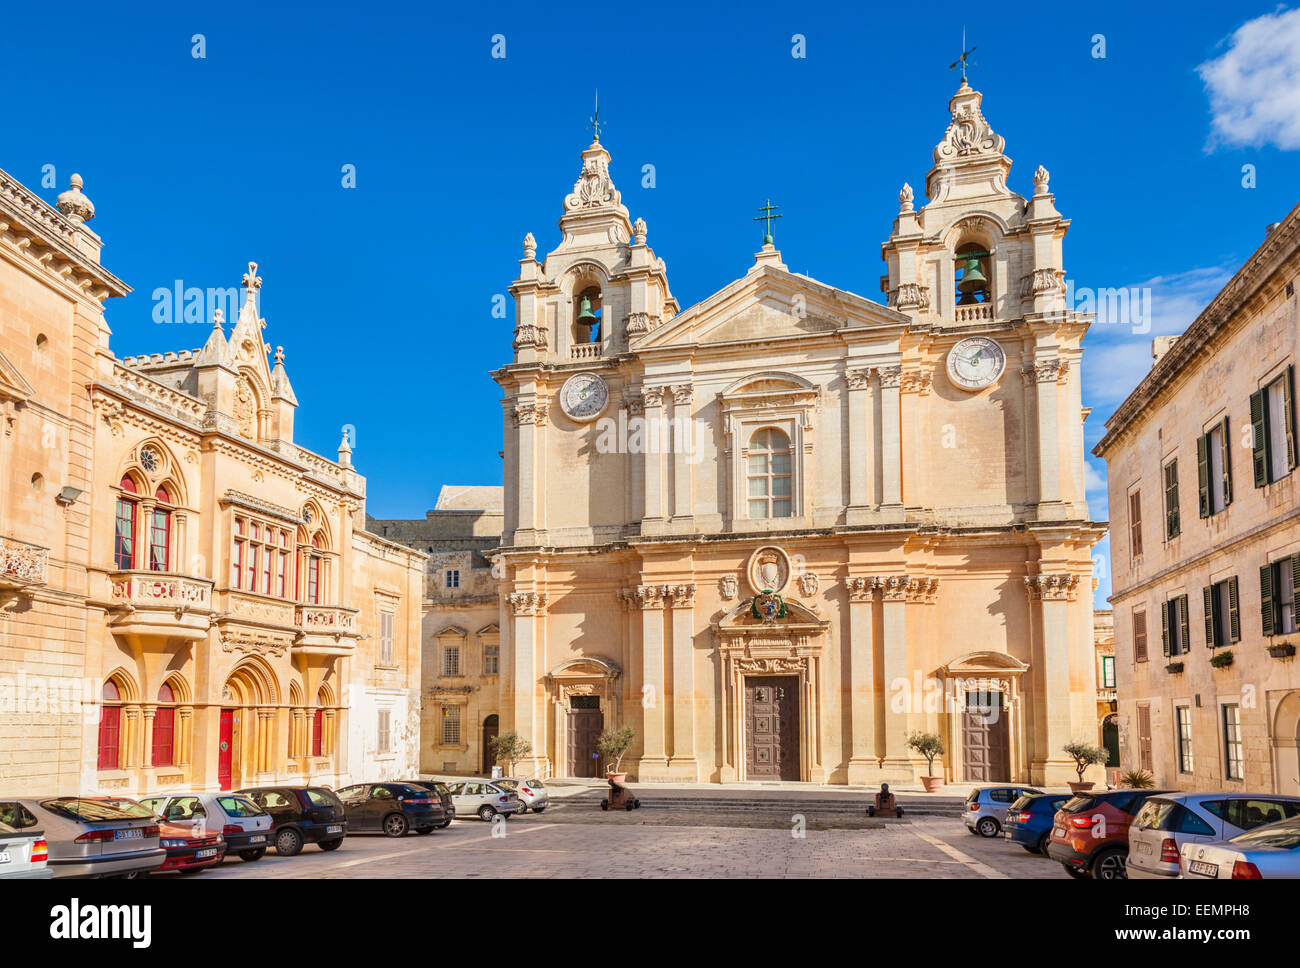 La Cathédrale St Paul et St Pauls Square Mdina Malte eu Europe Banque D'Images